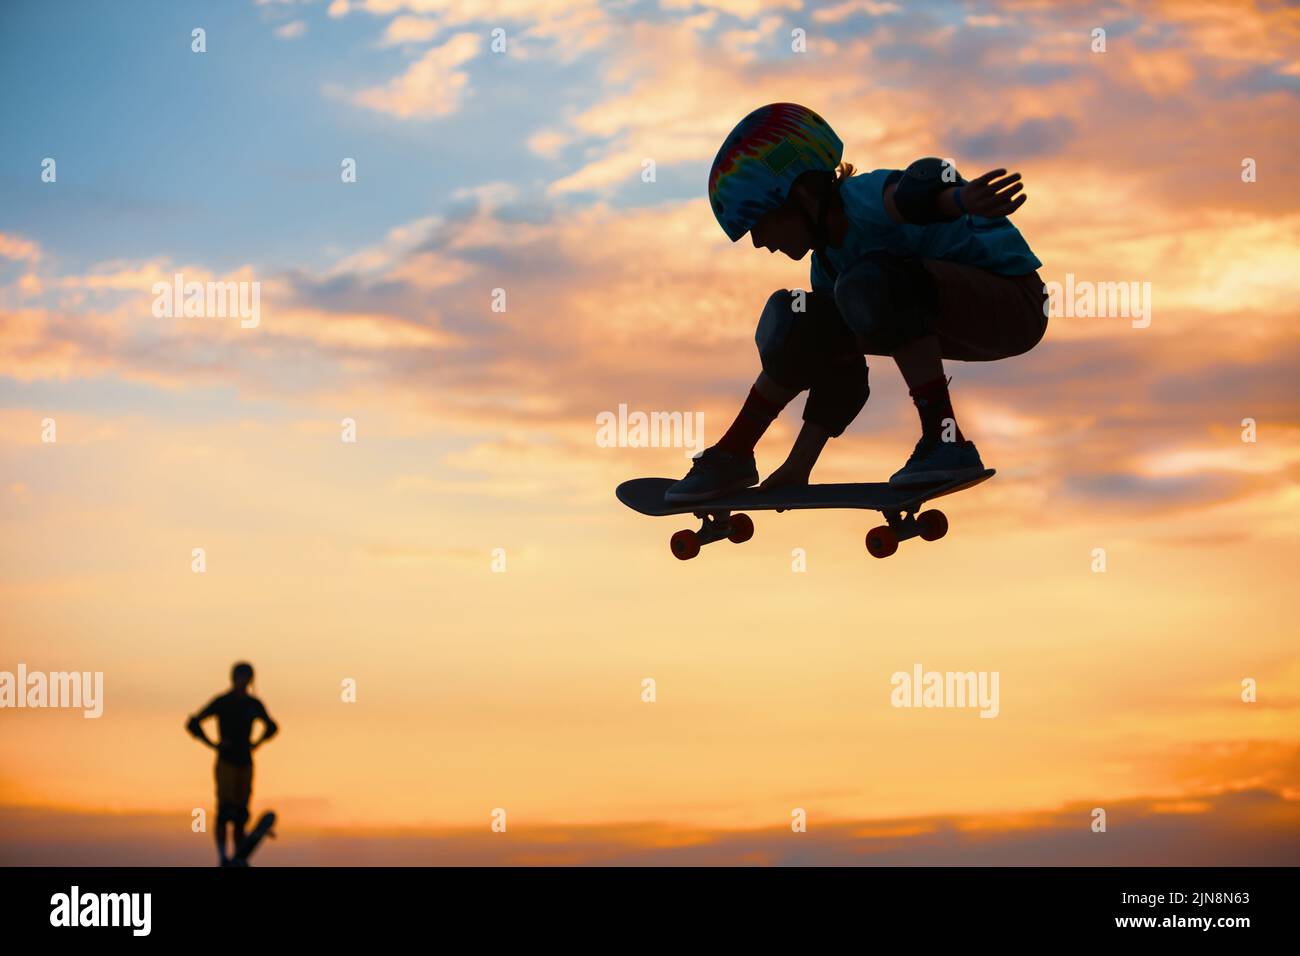 Skateboarder en action. Silhouette noire d'un jeune garçon faisant un tour d'air sur skate dans un skate Park sur fond de soleil. Culture de rue, skateboard Banque D'Images